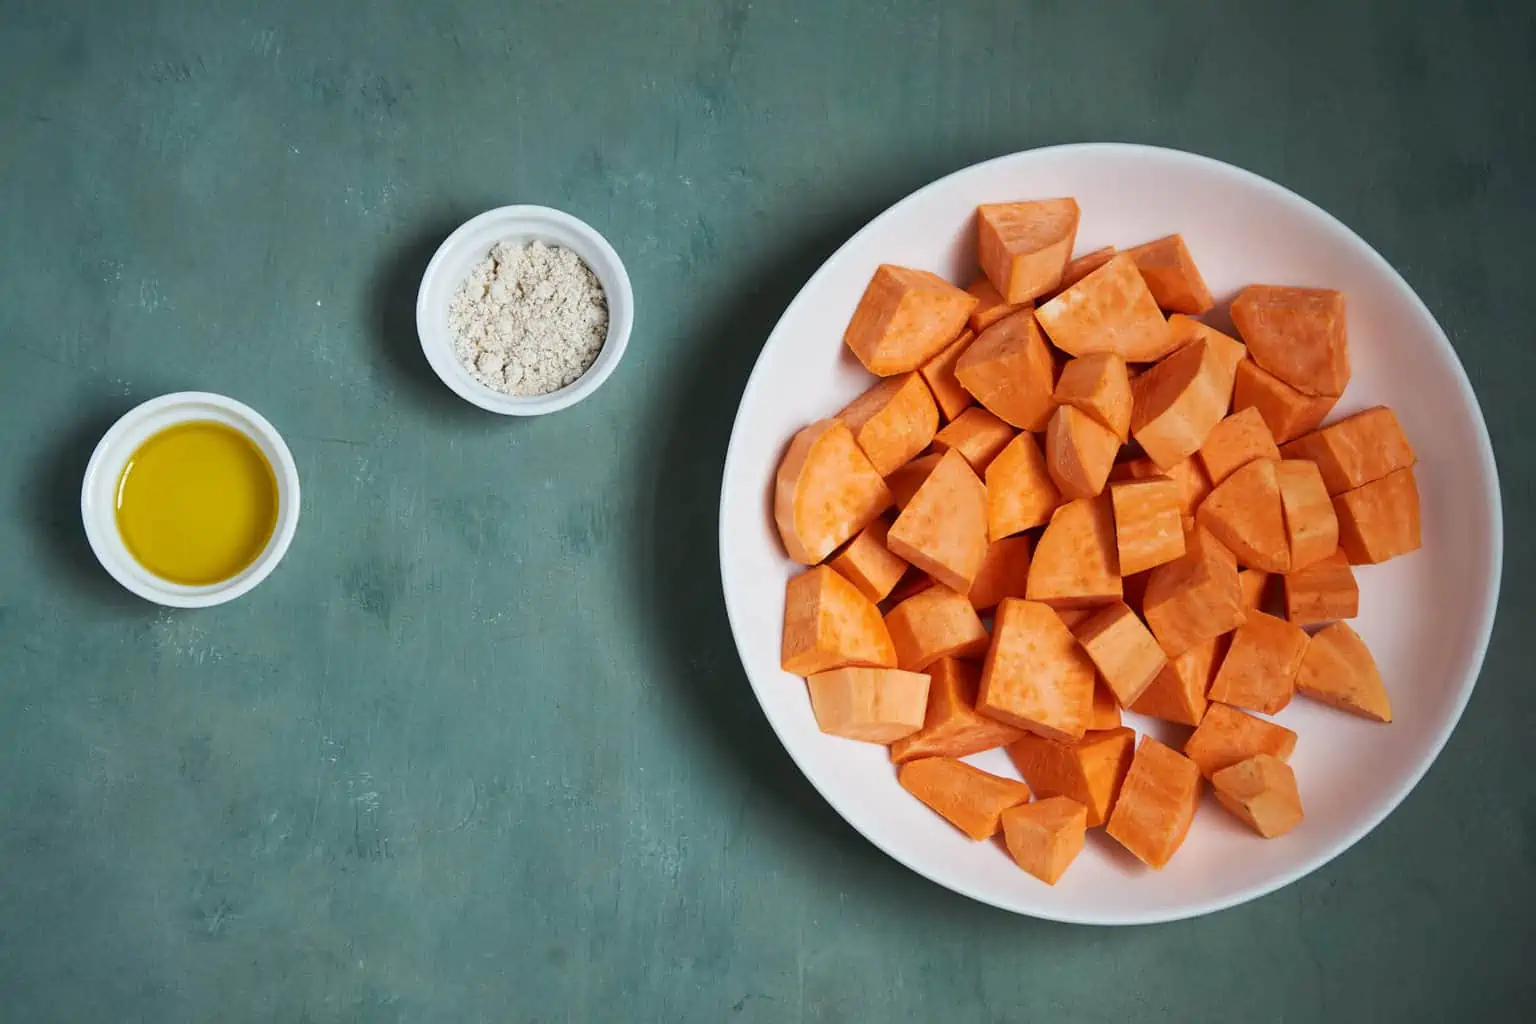 Ingredients to make roasted sweet potatoes in air fryer.